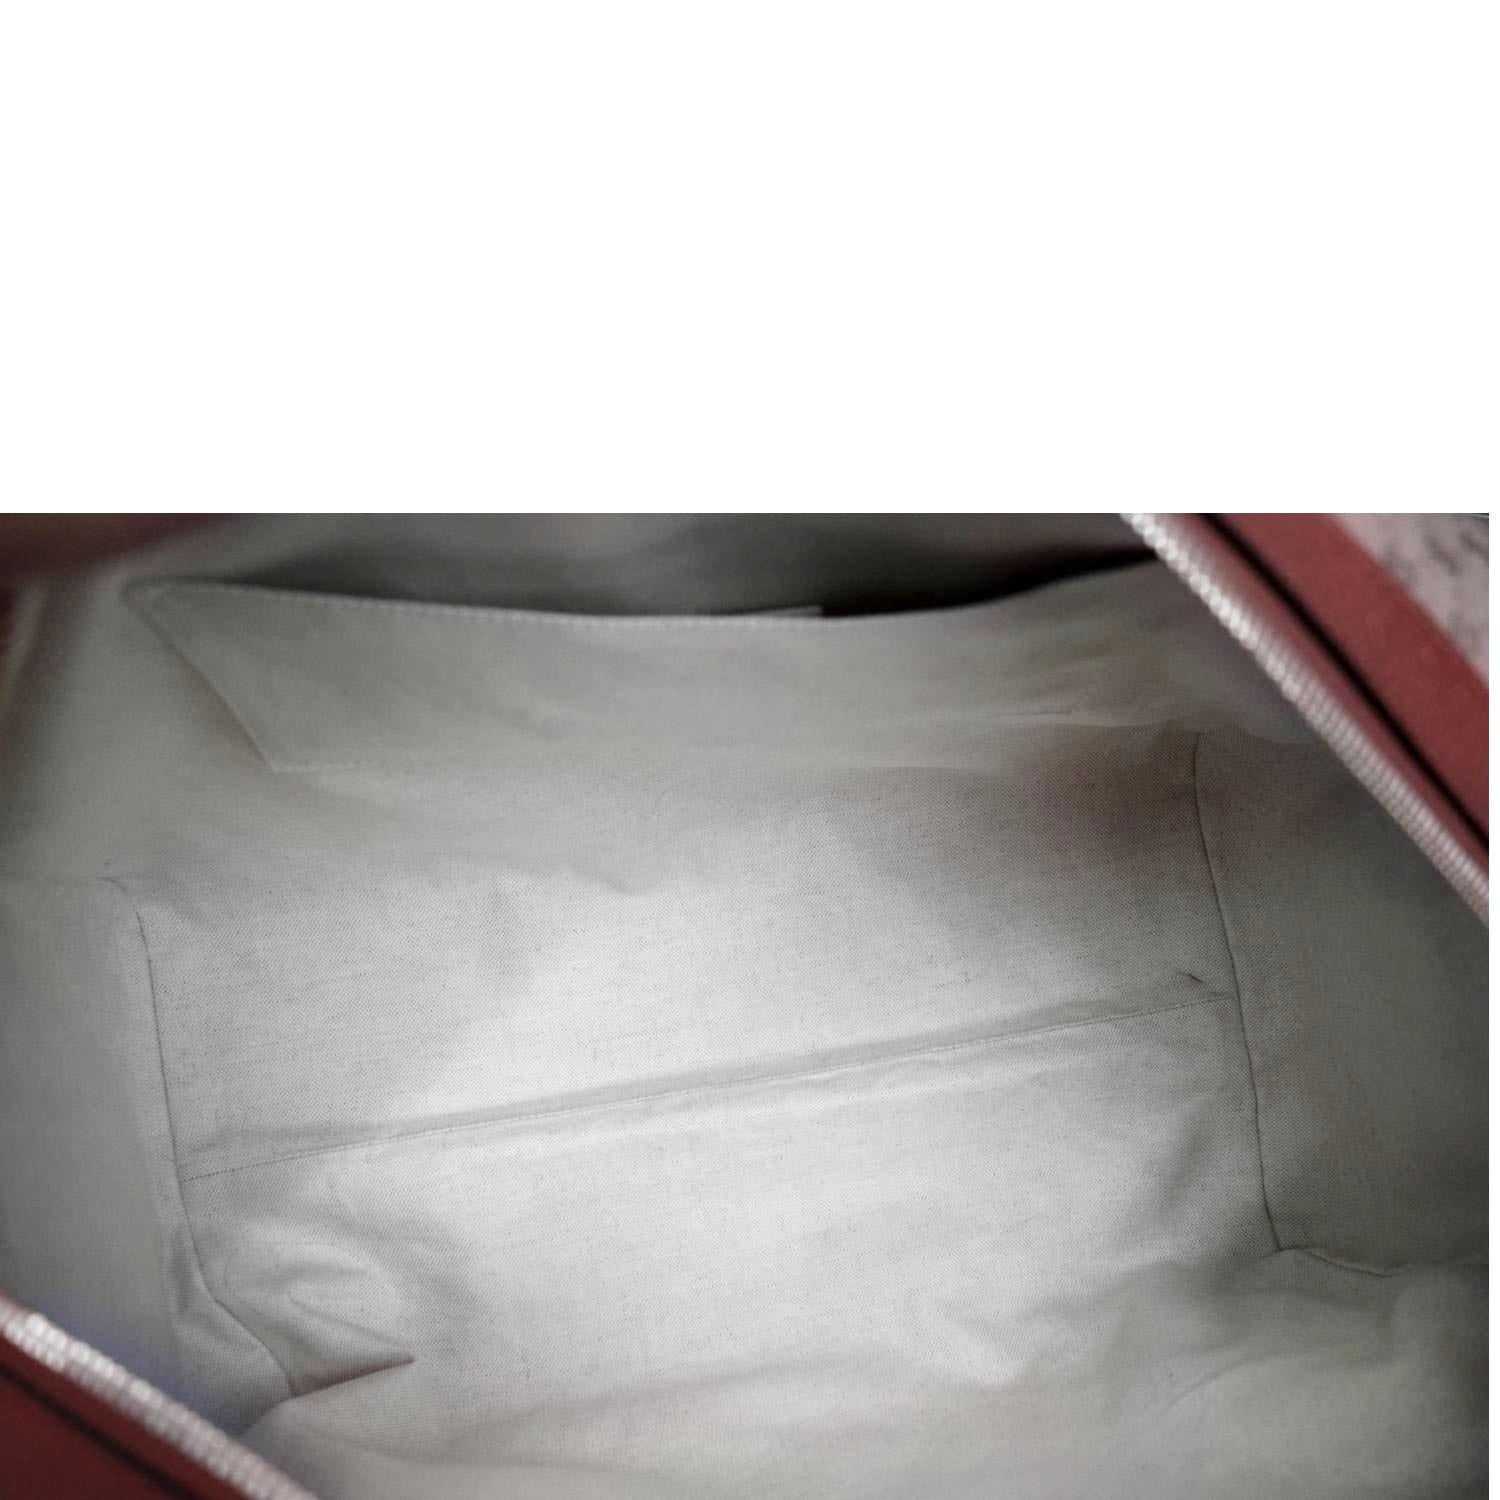 Authenticated used Gucci Guccidoraemon Doraemon GG Supreme Shoulder Bag 574886 Beige Red, Adult Unisex, Size: (HxWxD): 15cm x 25cm x 7cm / 5.9'' x